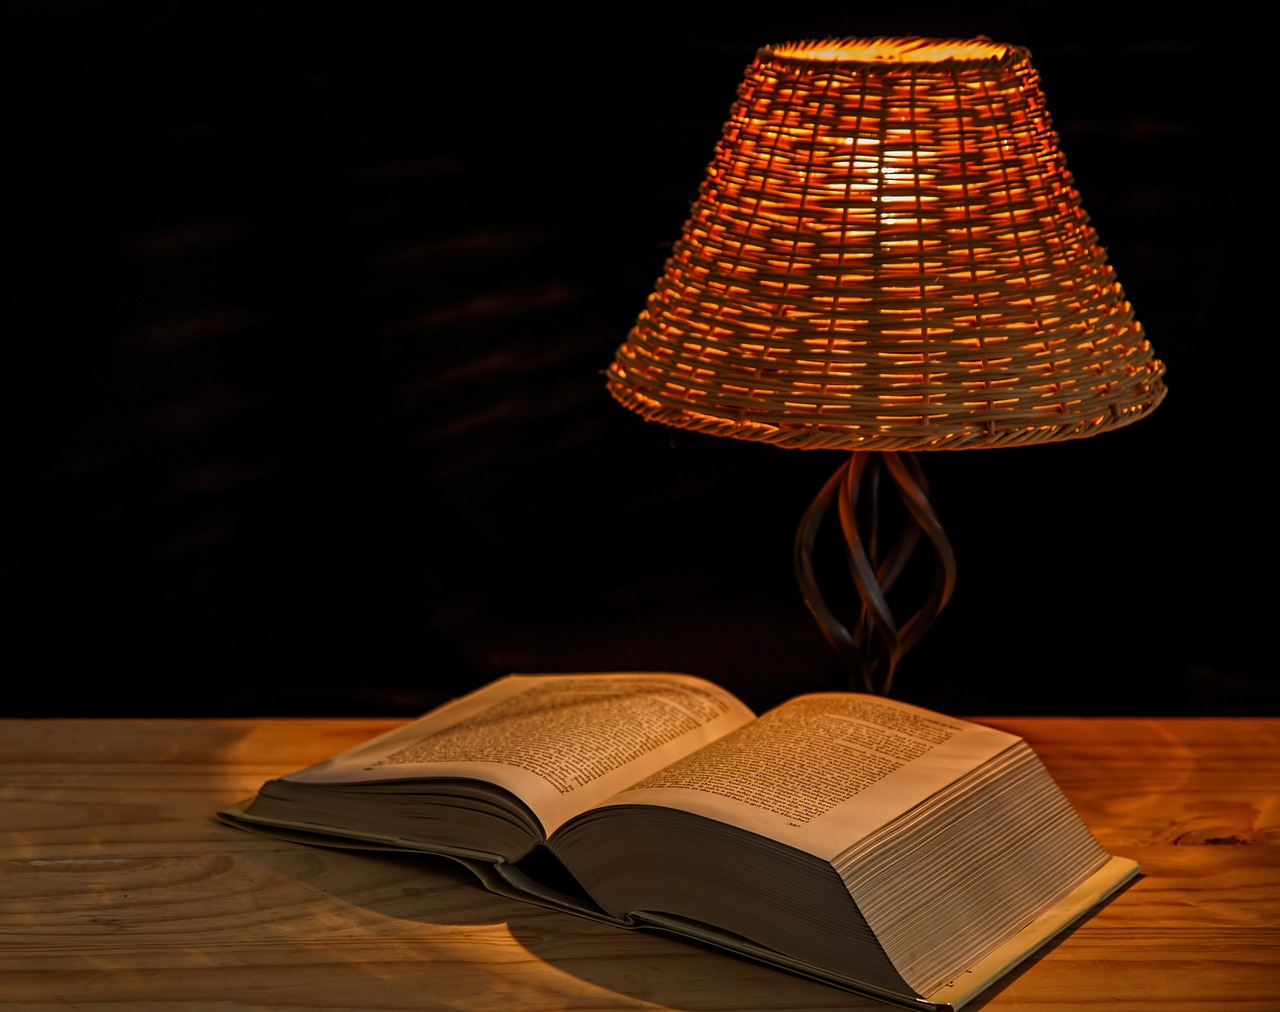 Auf einem Tisch liegt ein dickes, aufgeschlagenes Buch, daneben steht eine Tischleuchte mit einem Lampenschirm aus Korbgeflecht. Das Licht ist sehr warm.